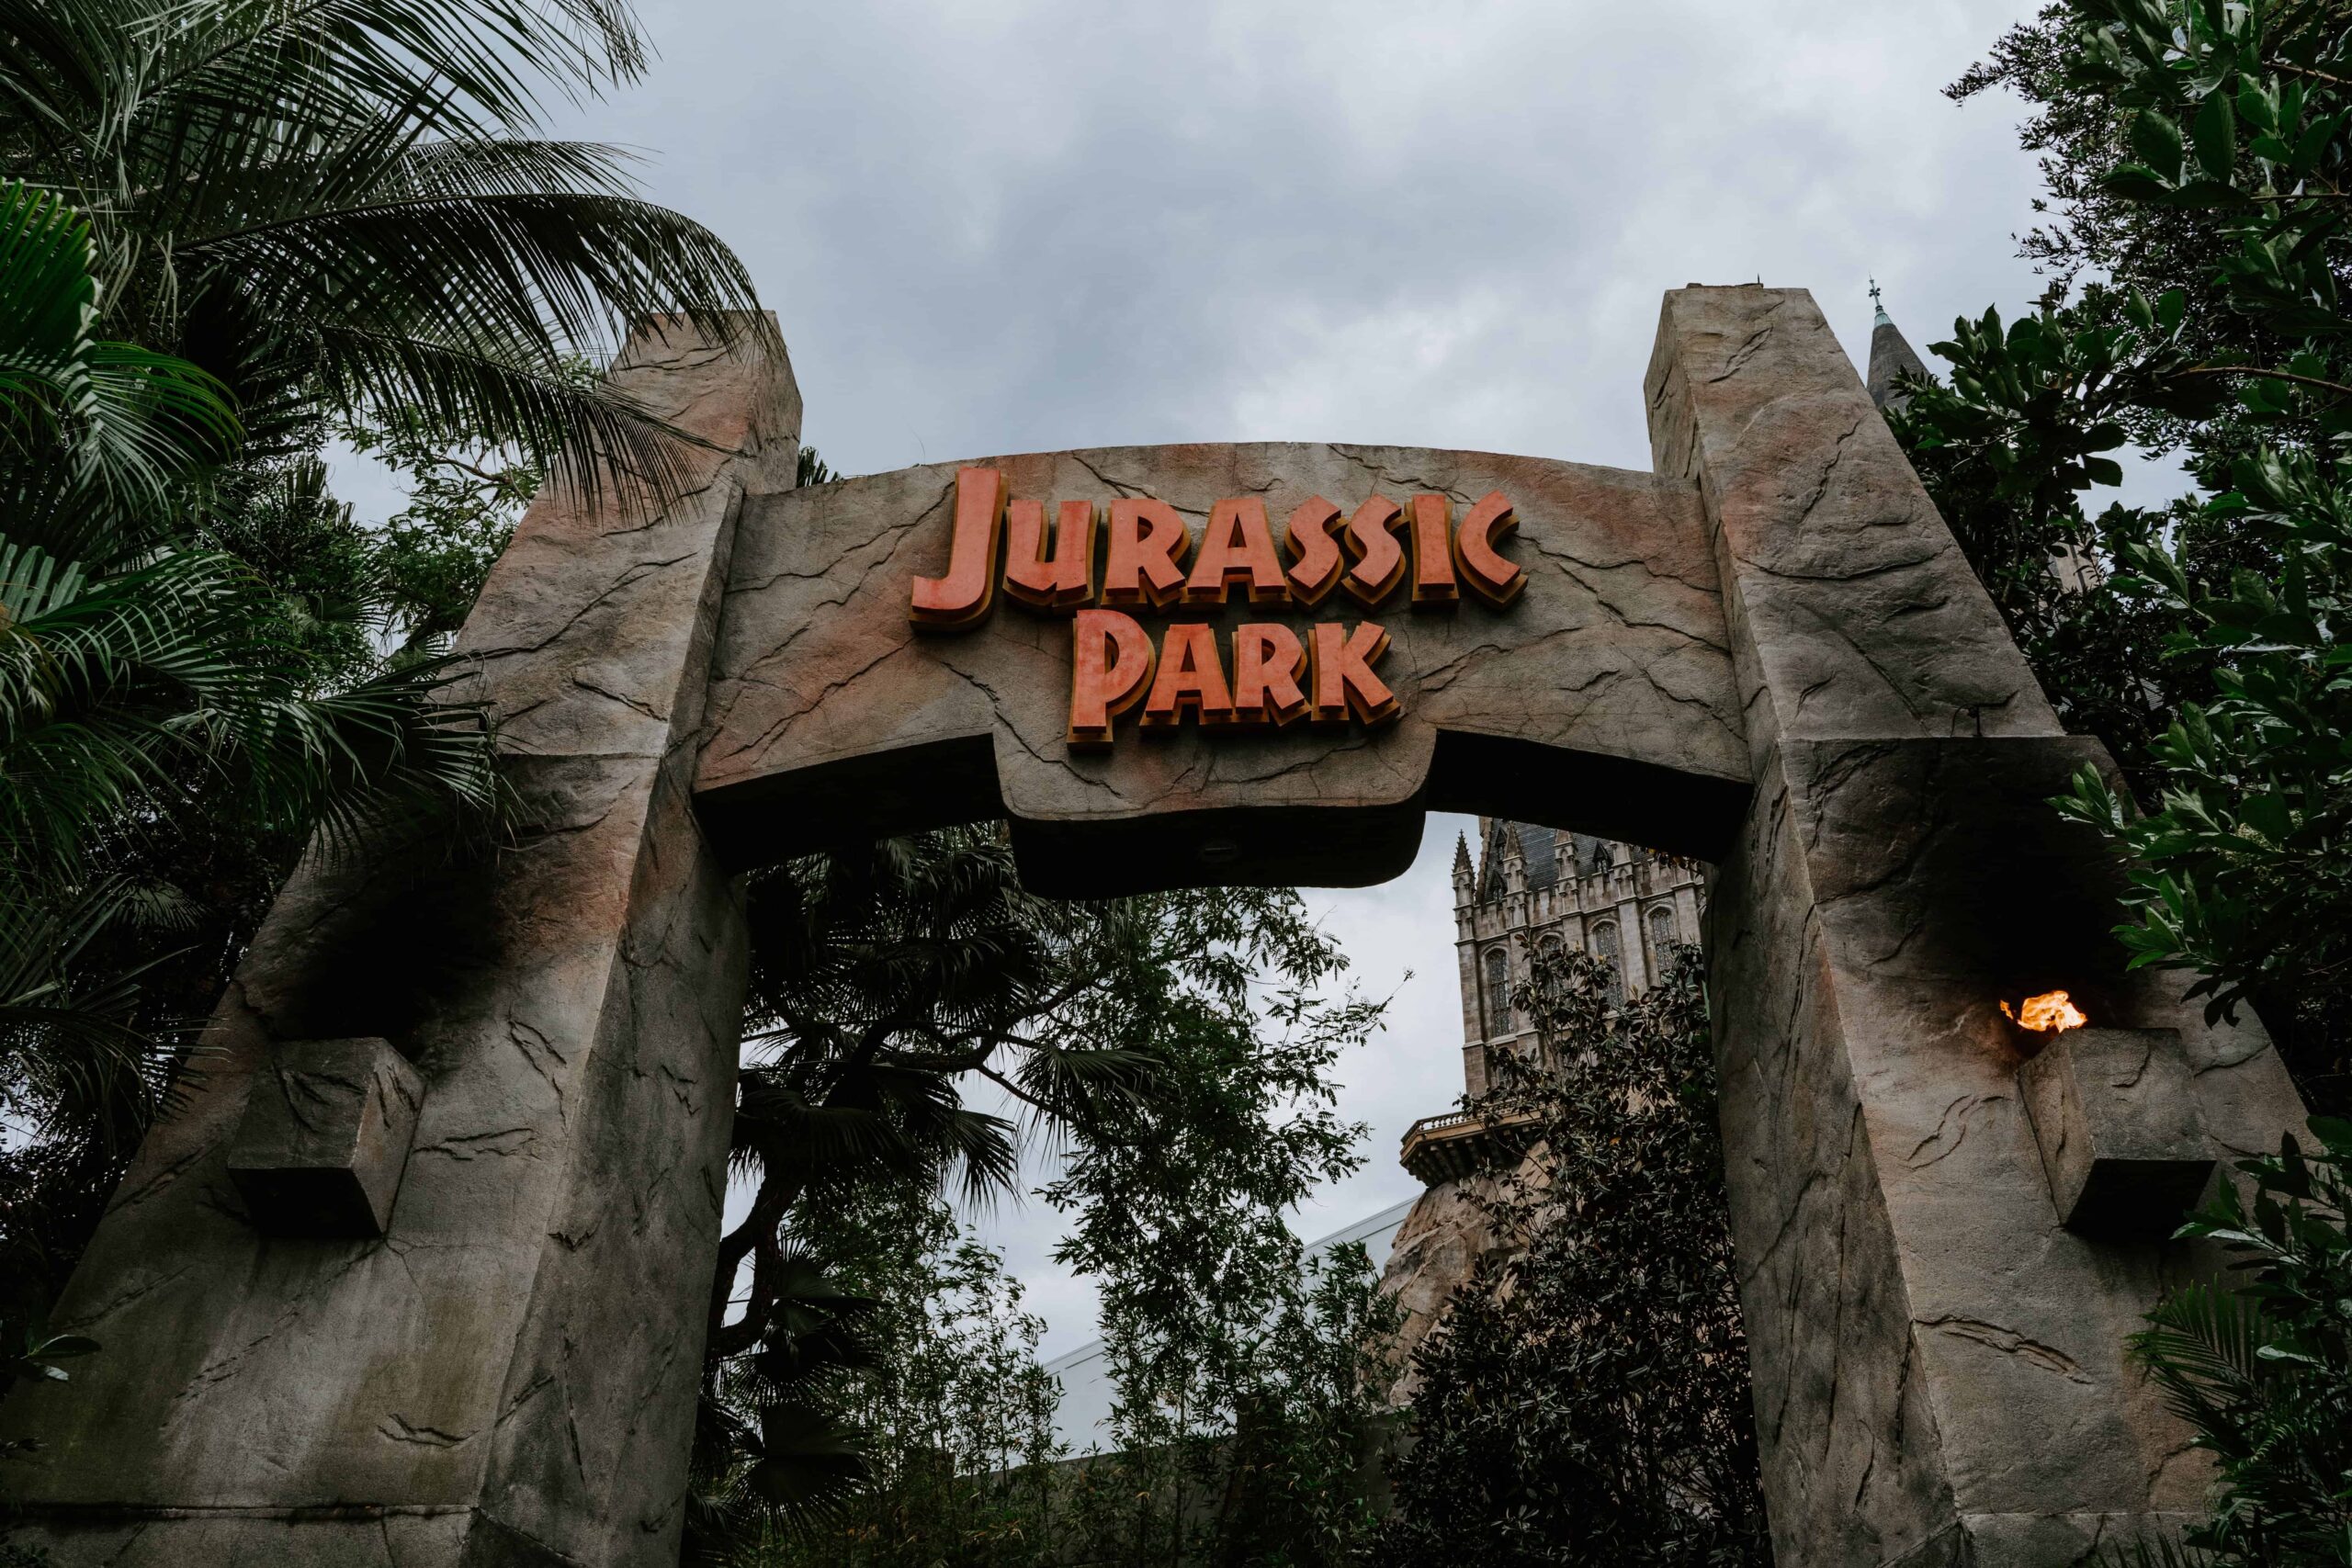 Where Was Jurassic Park Filmed?